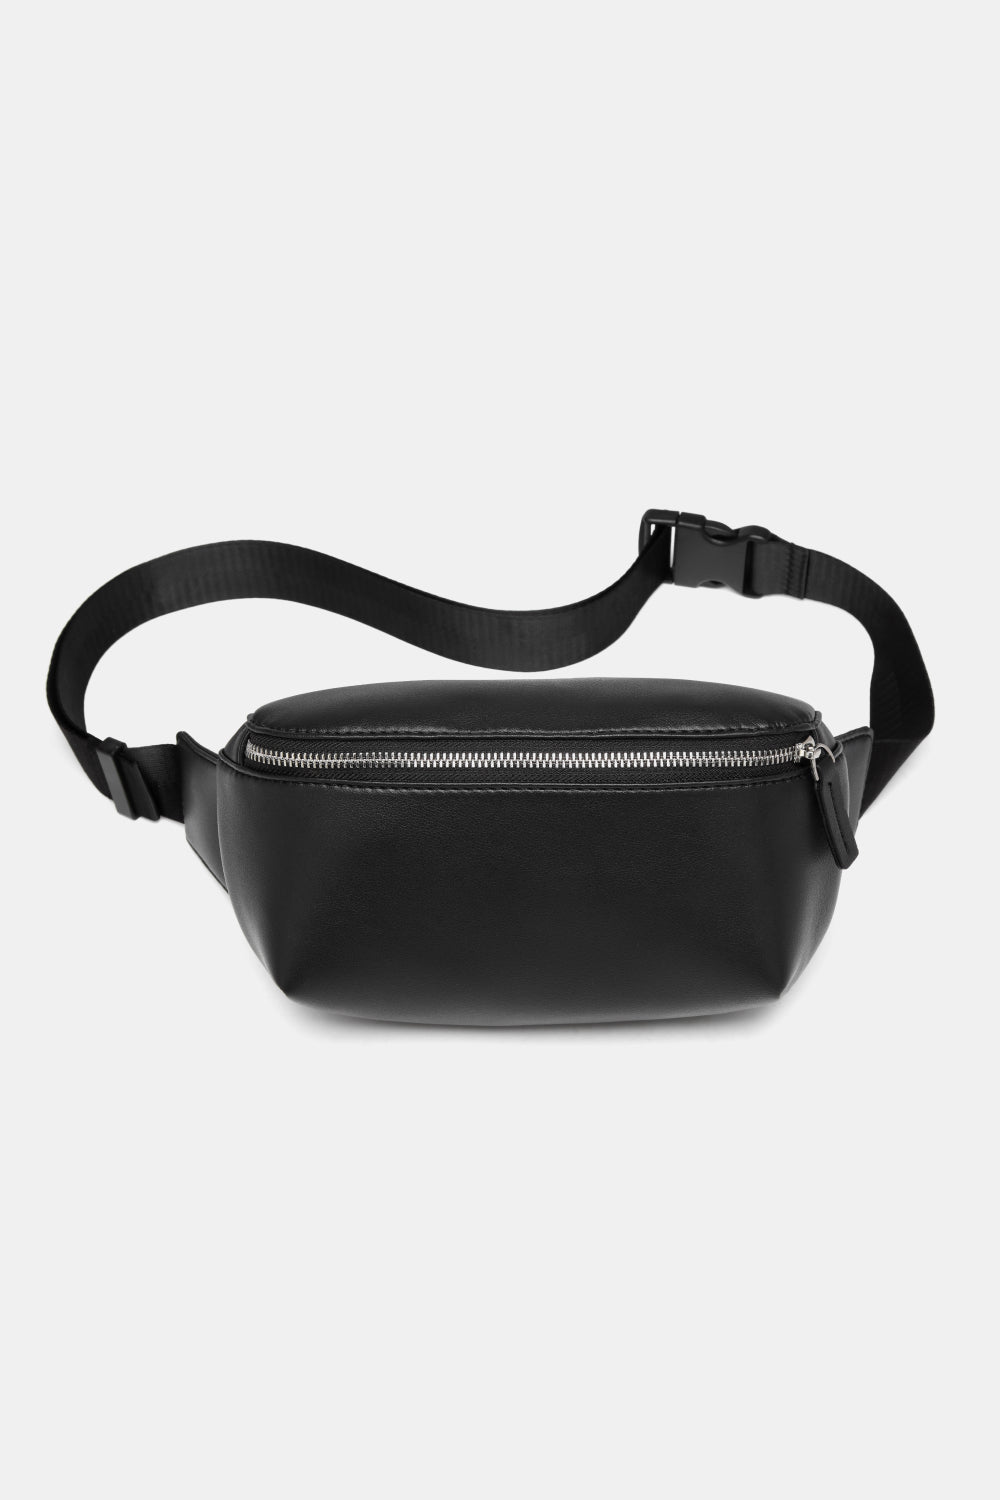 Dark Slate Gray Small PU leather Sling Bag Handbags